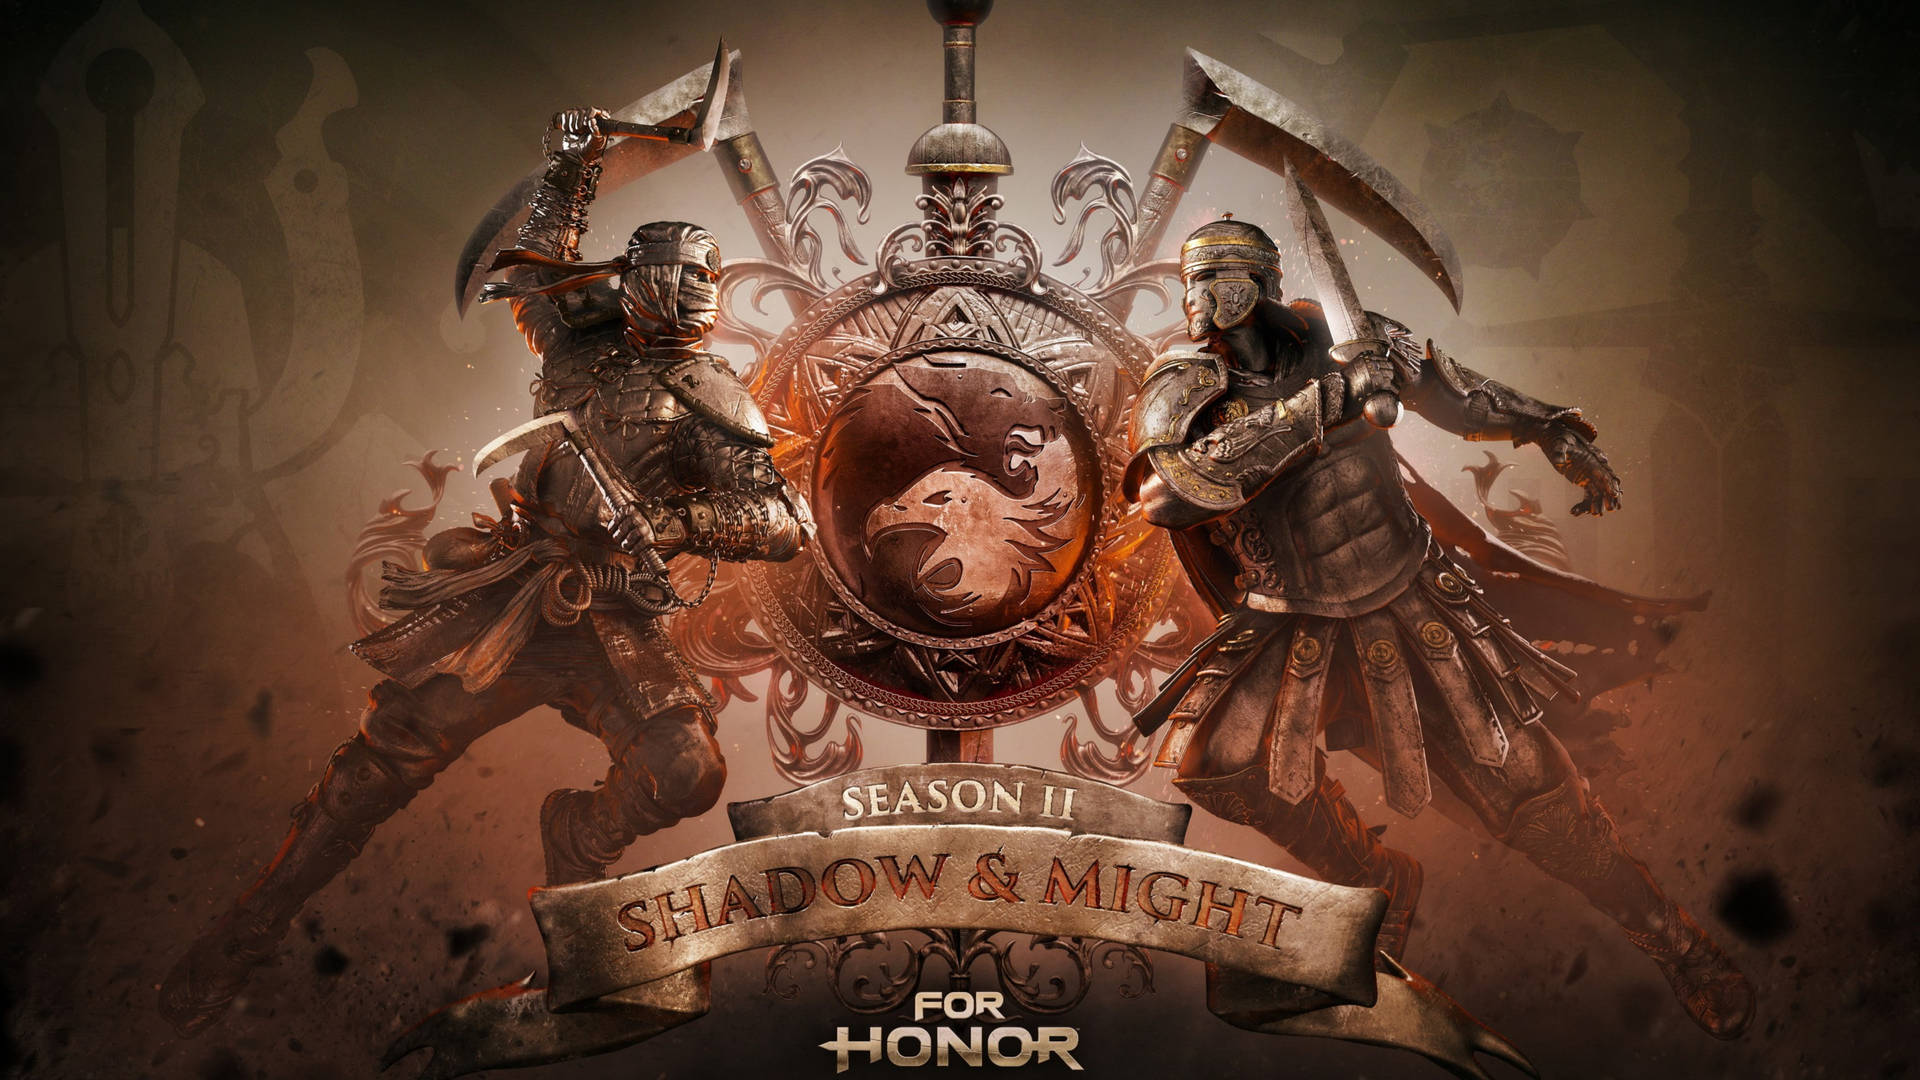 For Honor 4k Season 2 Poster Background